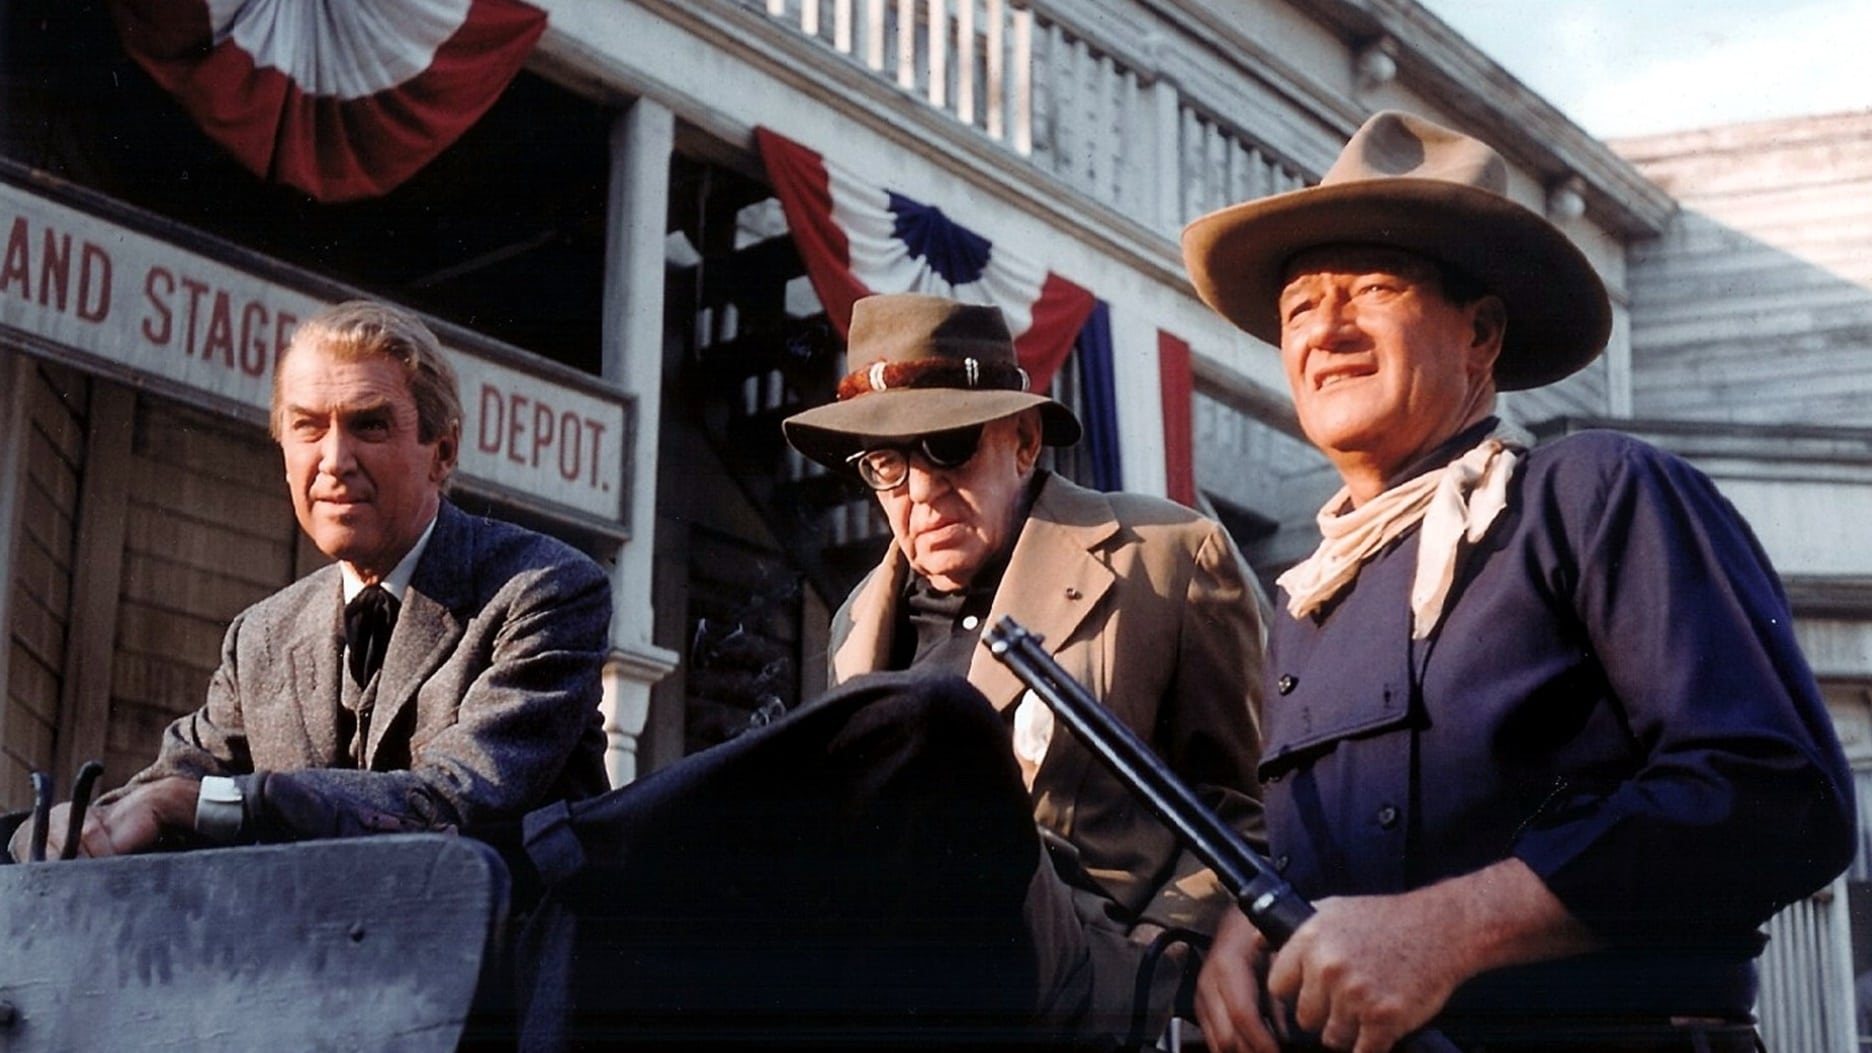 دانلود فیلم The Man Who Shot Liberty Valance 1962